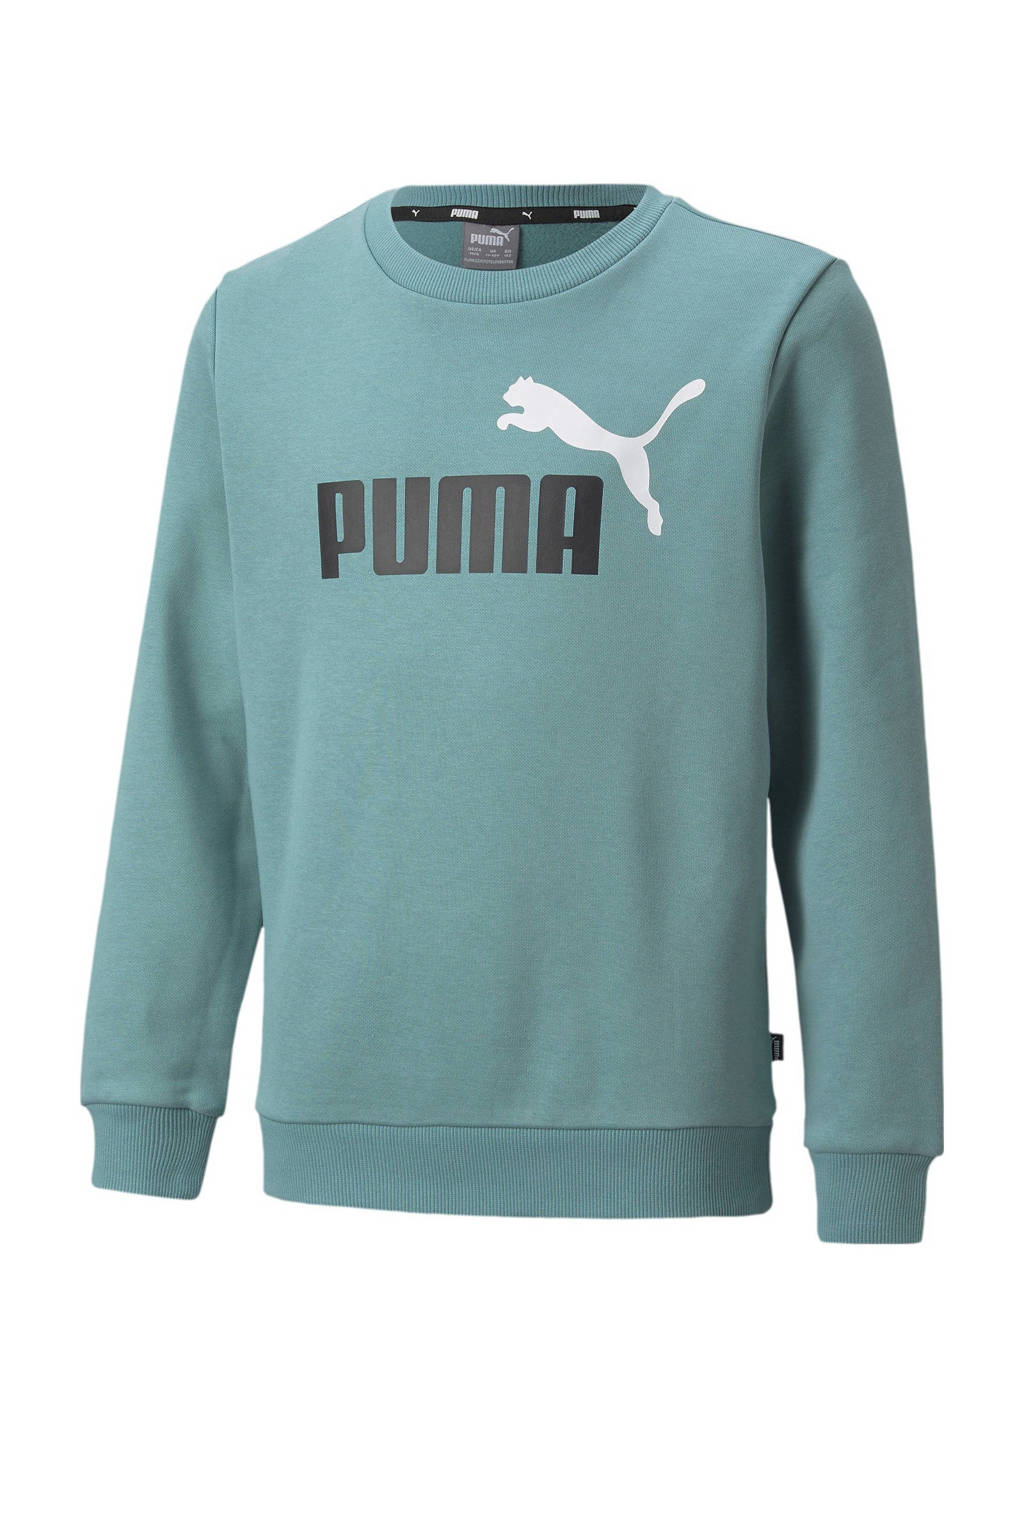 Puma trui met logo lichtblauw